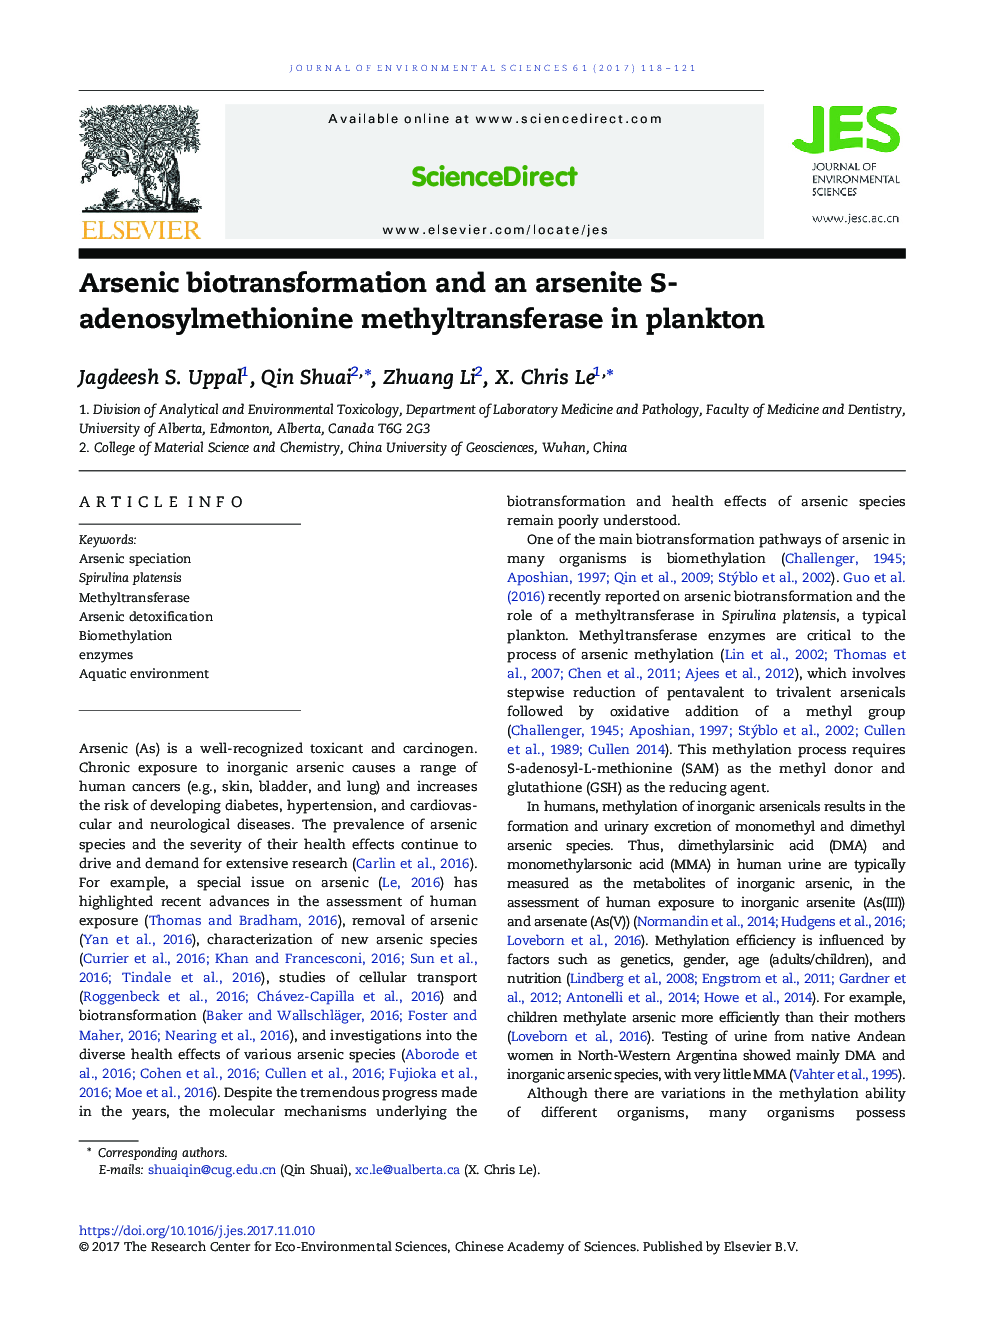 Arsenic biotransformation and an arsenite S-adenosylmethionine methyltransferase in plankton